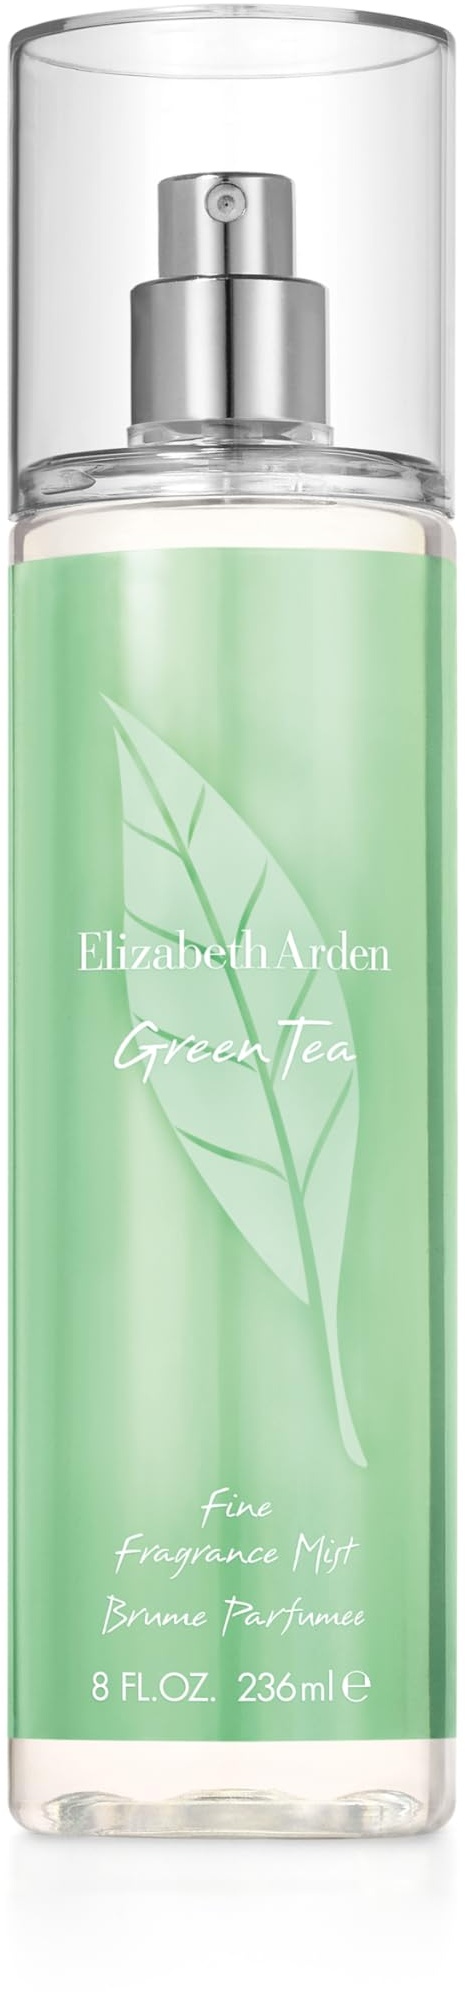 Elizabeth Arden Green Tea Fine Fragrance Mist, Damen-Körperparfumspray, frischer und fruchtiger Duft, 236 ml